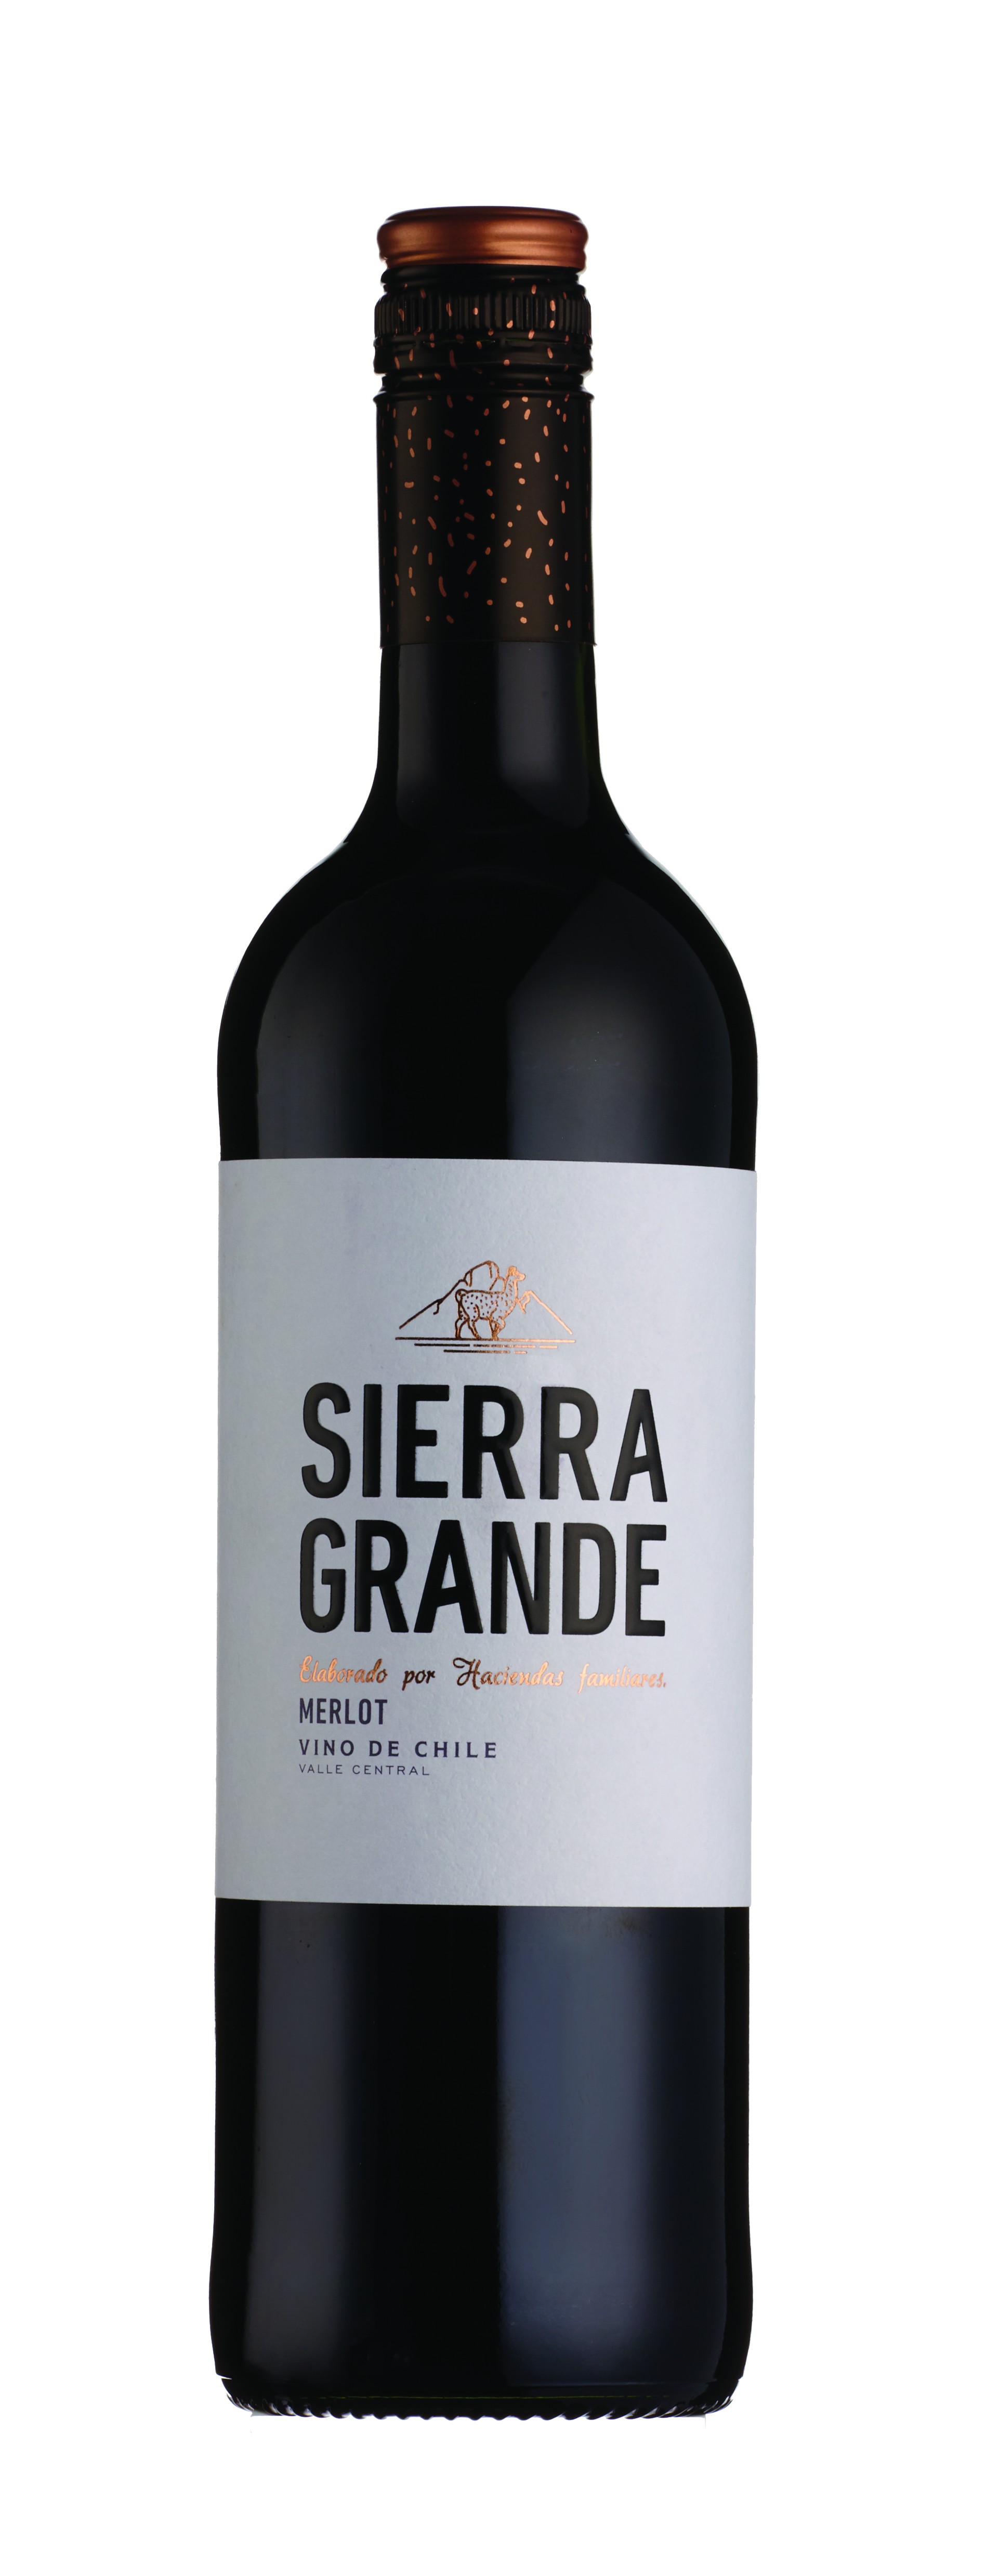 Buy Sierra Grande Merlot at herculeswines.co.uk